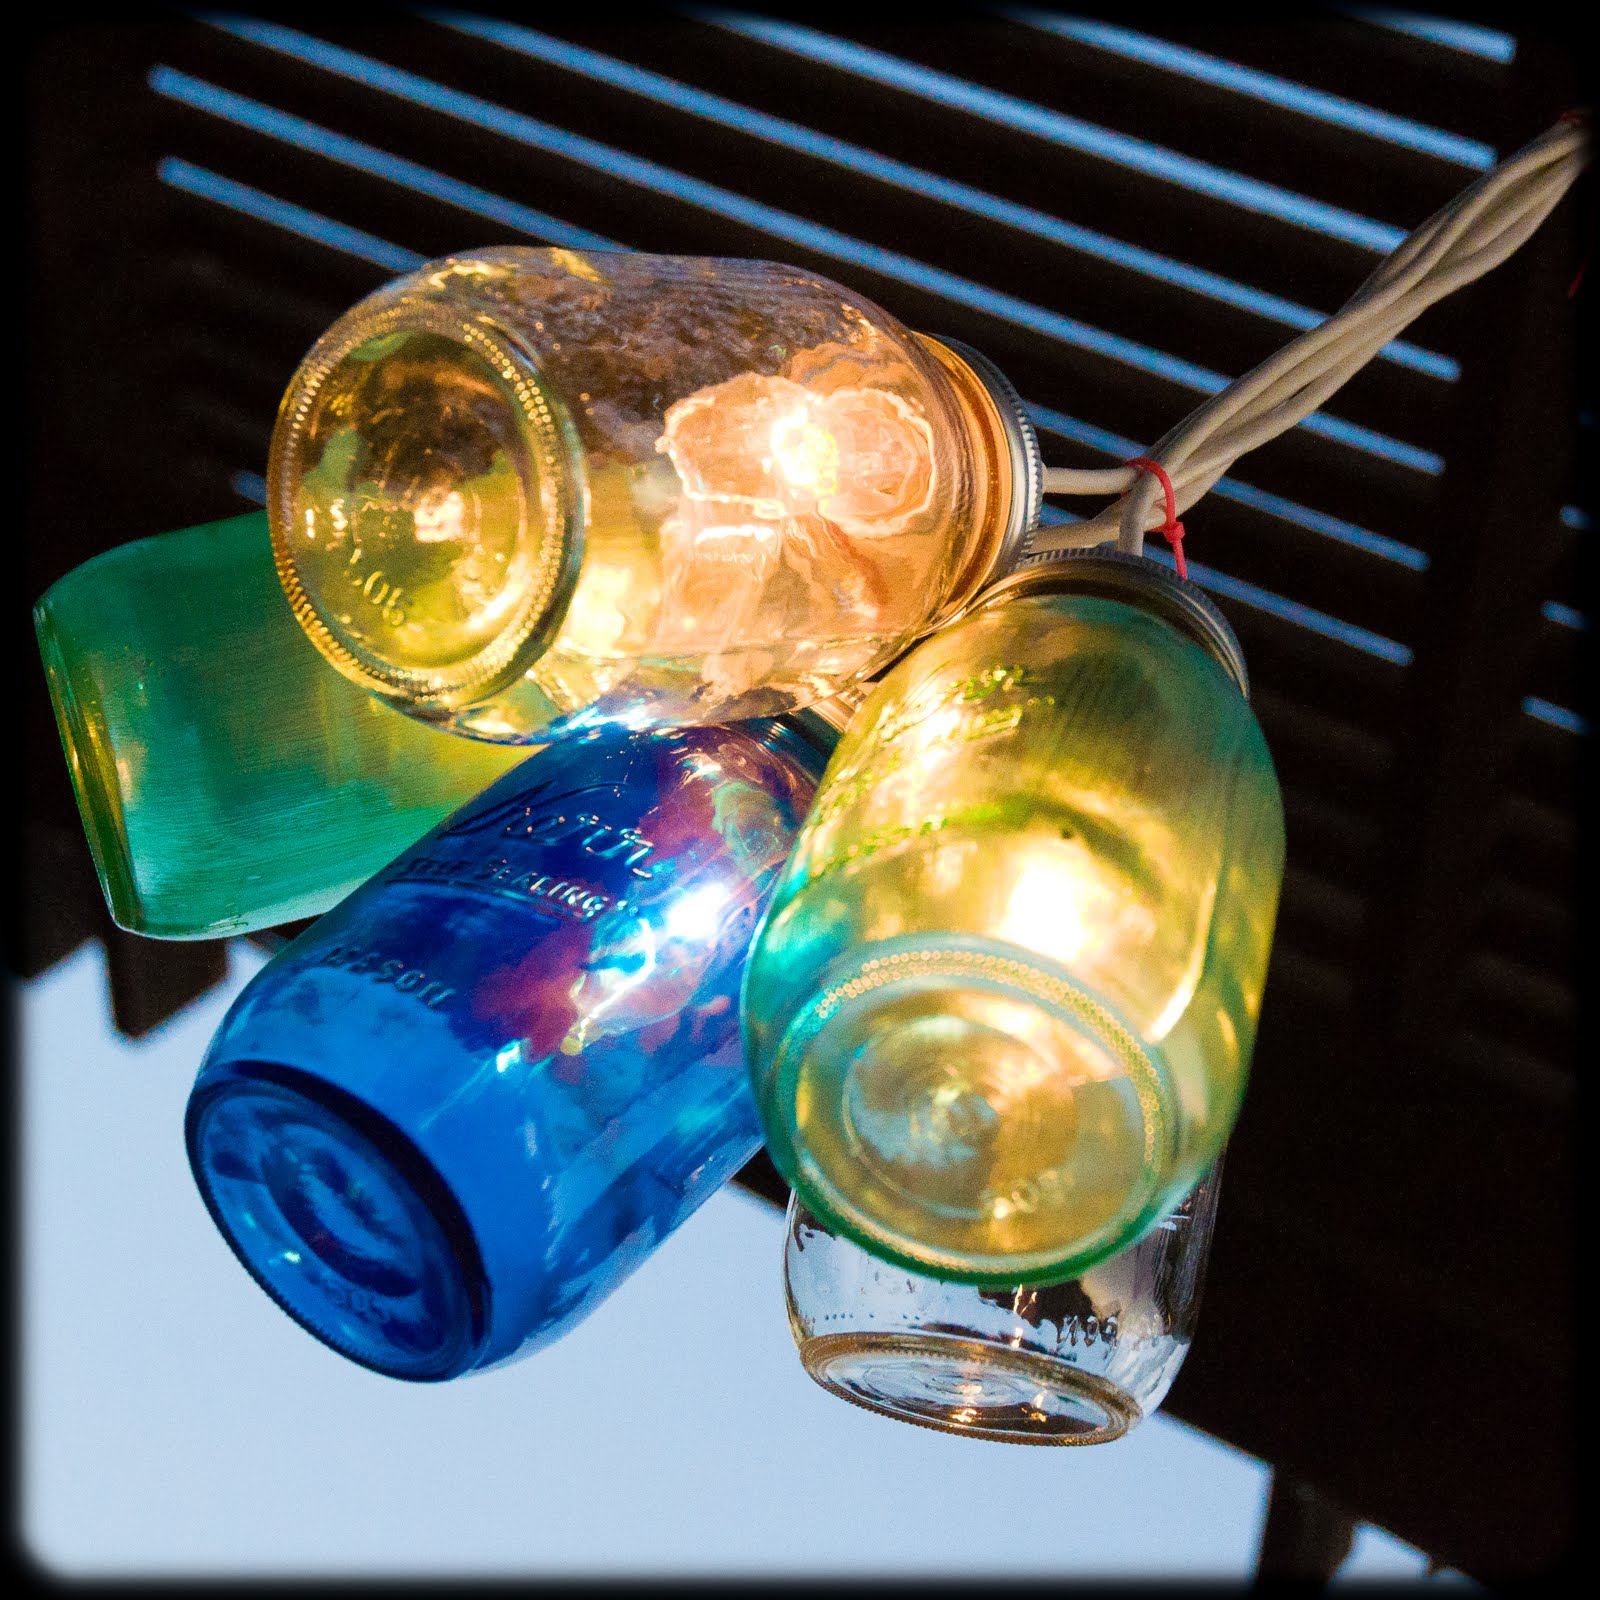 Декор из стеклянных бутылок своими руками: 8 идей, как использовать бутылки в интерьере